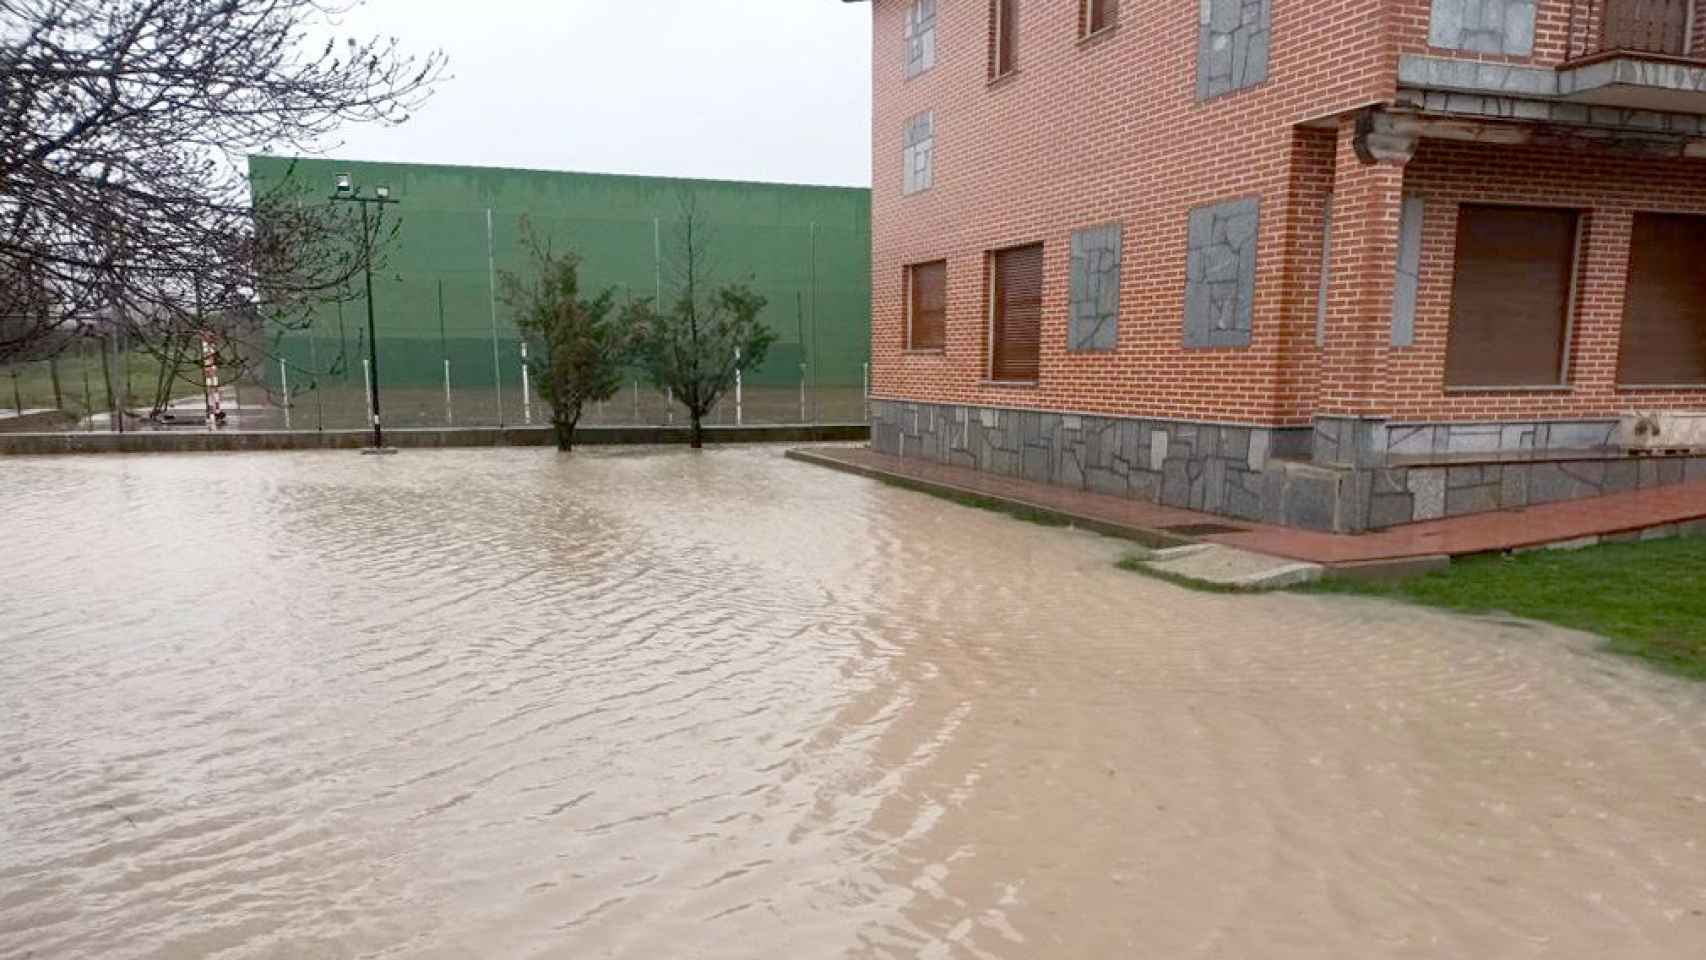 Inundaciones en Pajares de Adaja (Ávila) por las copiosas lluvias de los últimos días